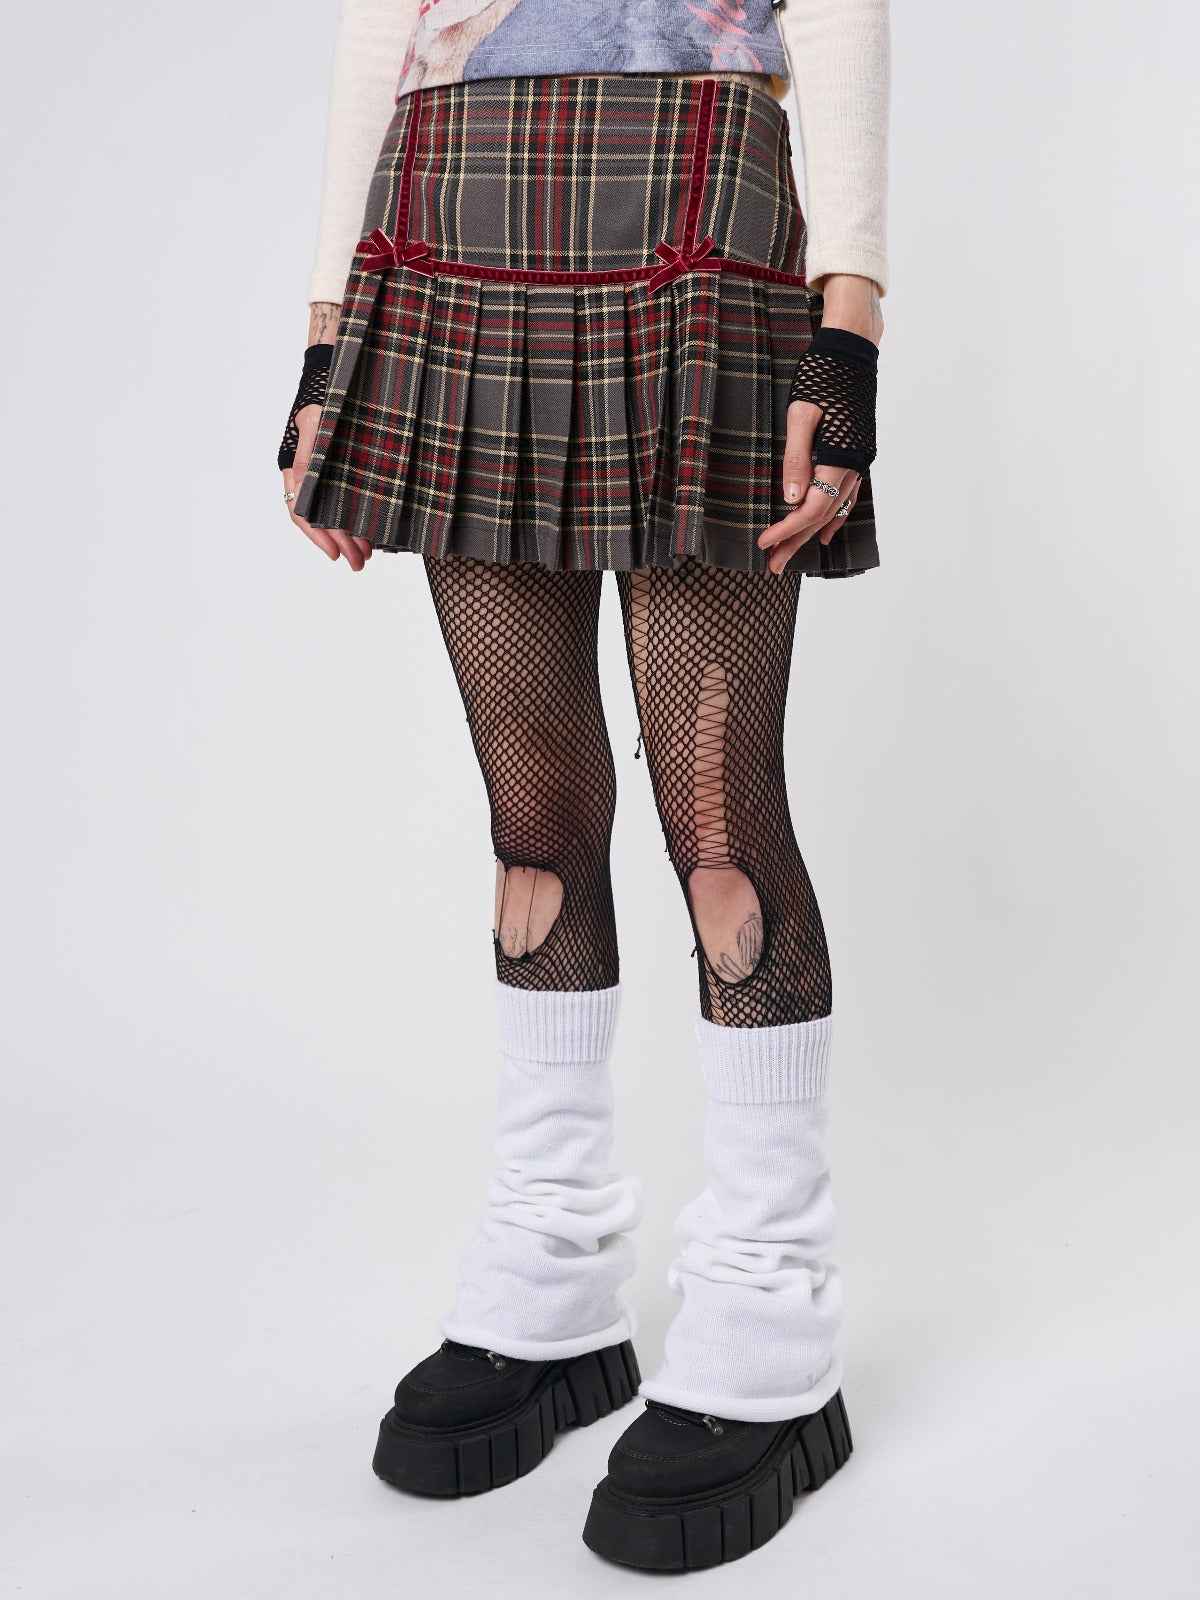 Orla Pleated Tartan Mini Skirt